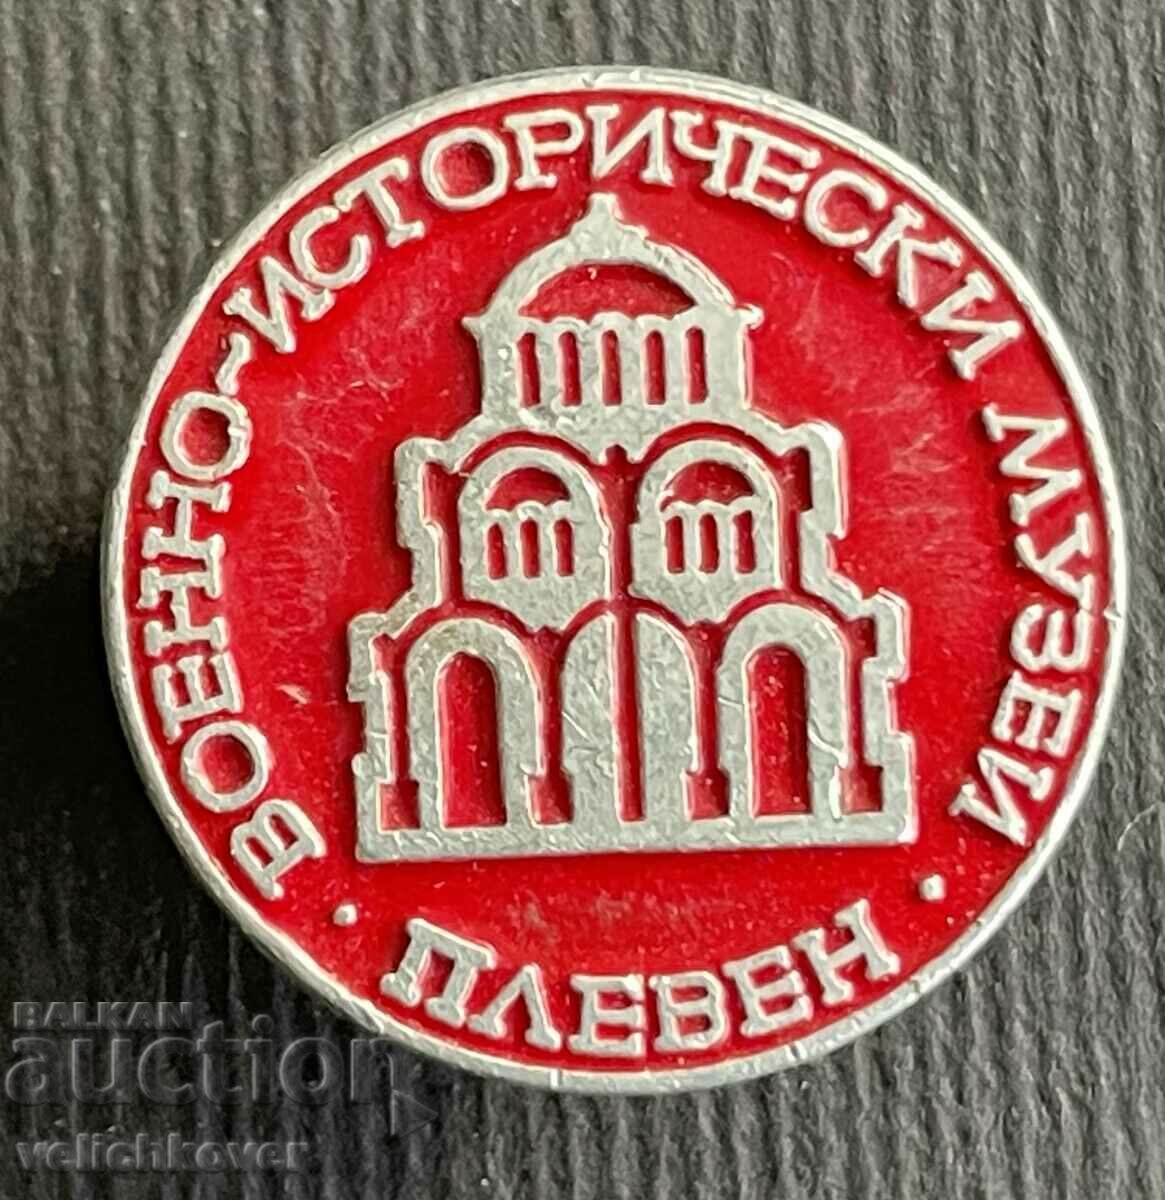 37036 Βουλγαρία υπογραφή Στρατιωτικού Ιστορικού Μουσείου Πλέβεν